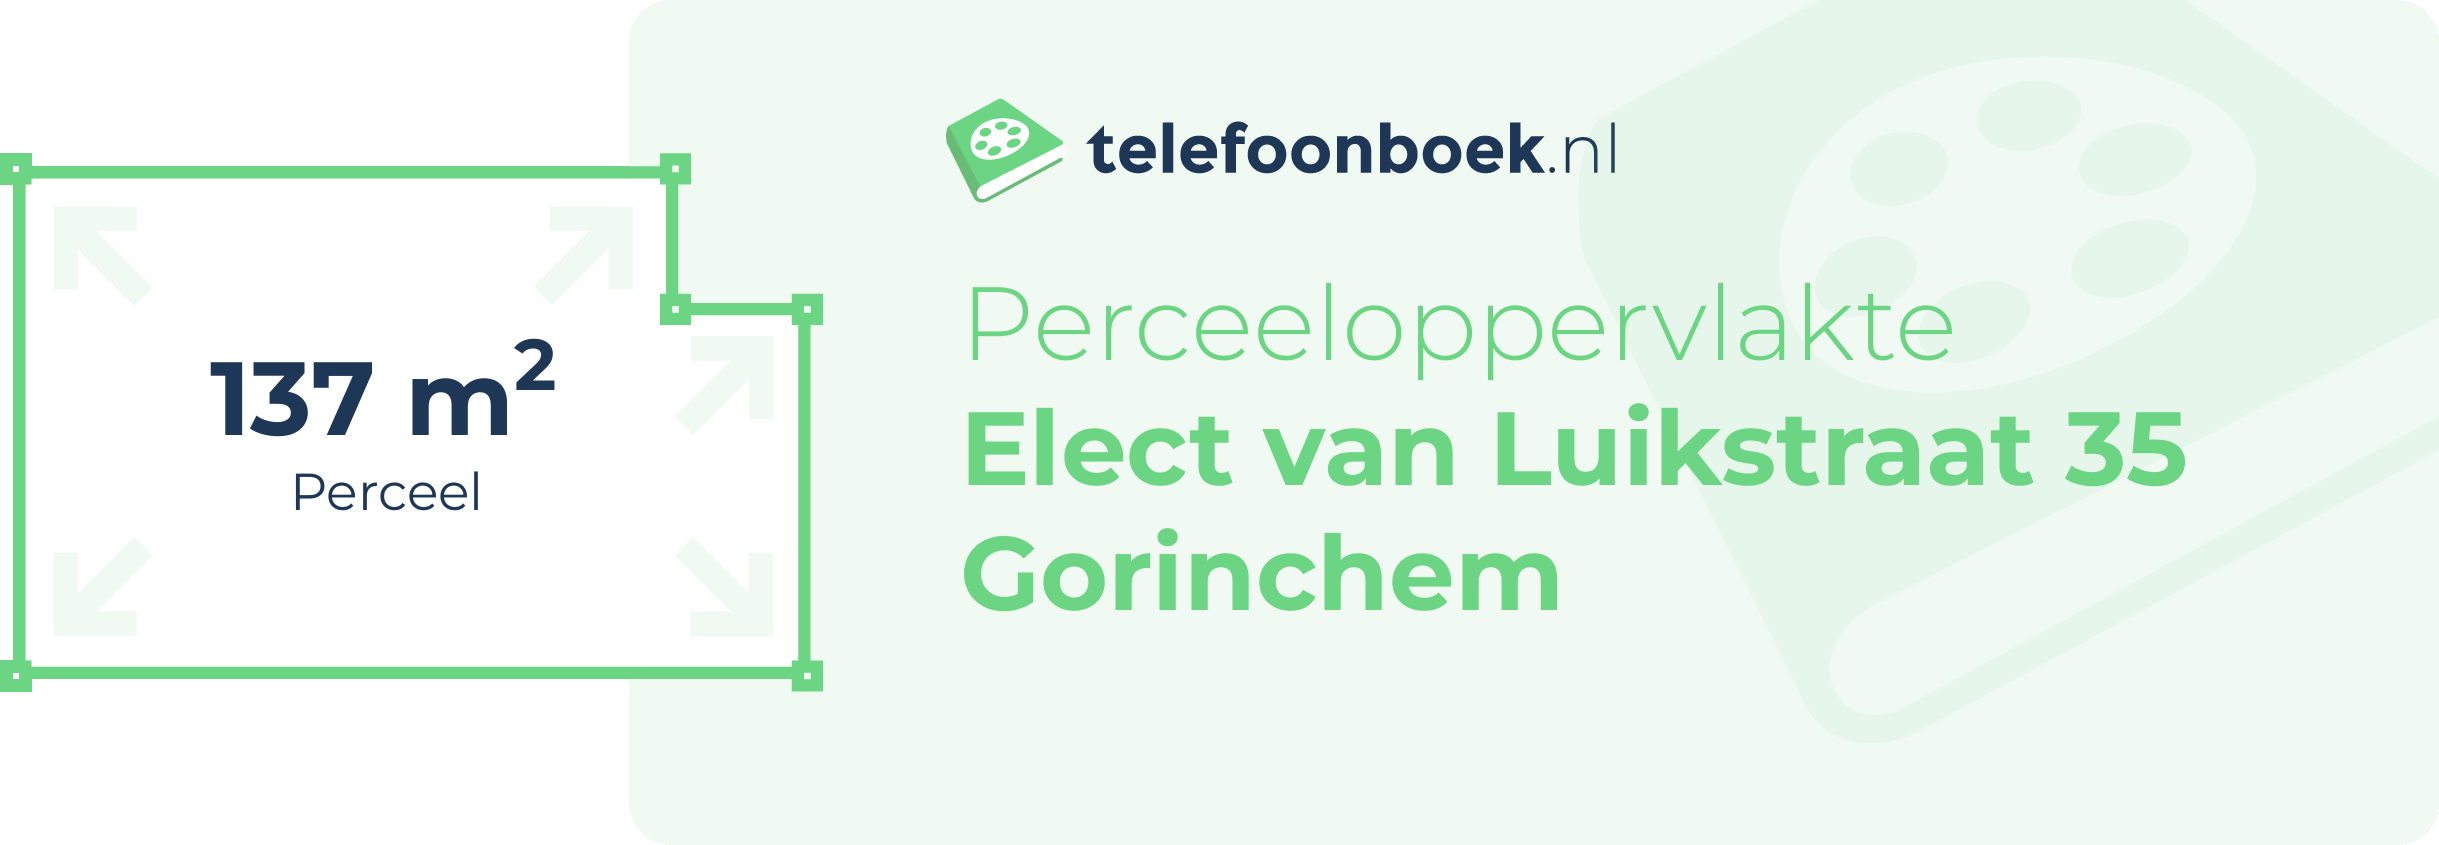 Perceeloppervlakte Elect Van Luikstraat 35 Gorinchem